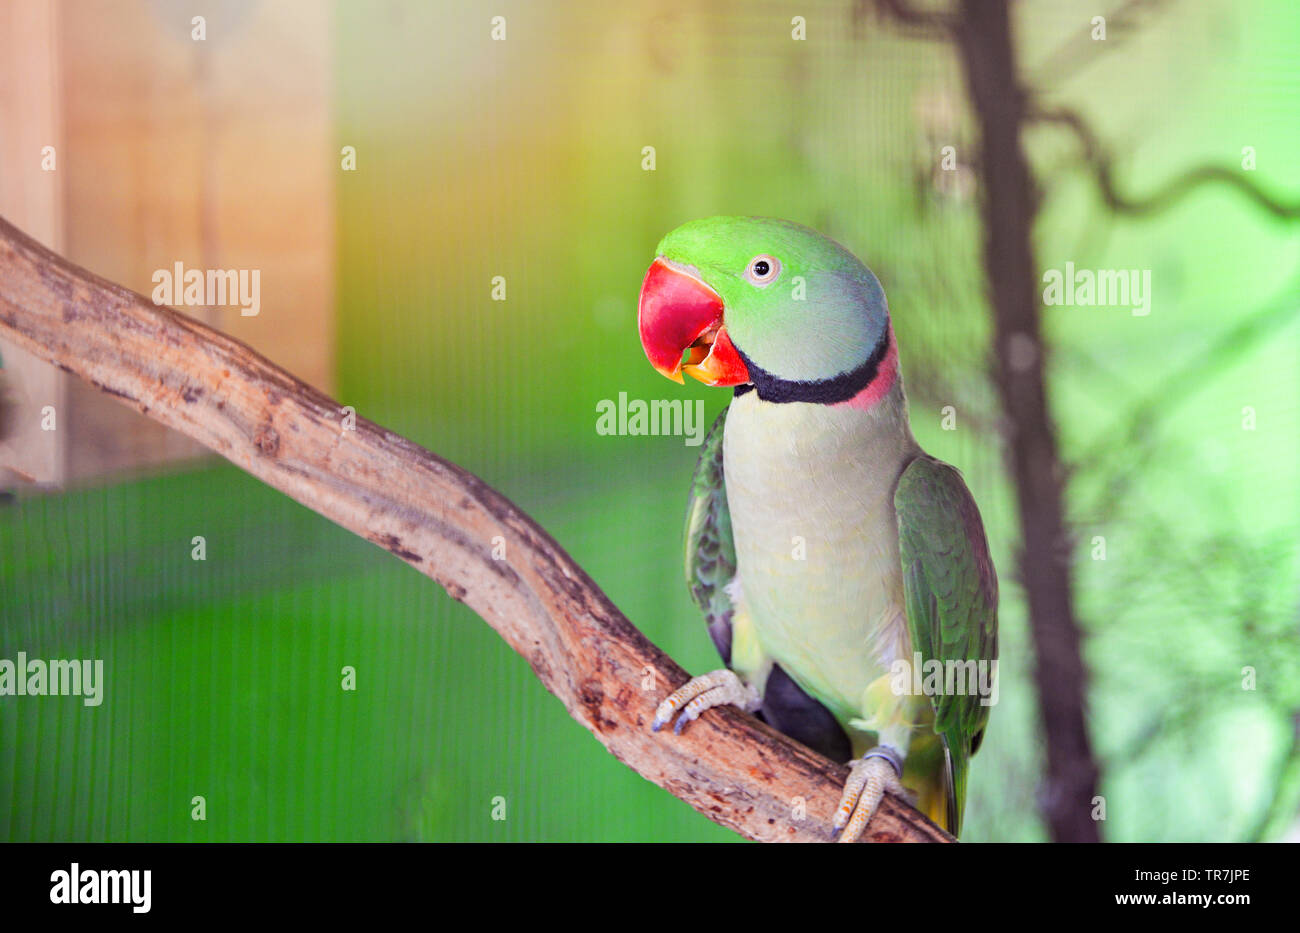 Pappagallo verde pet uccello in gabbia / bellissimo anello rose colli  parrocchetto alessandrino bird Foto stock - Alamy